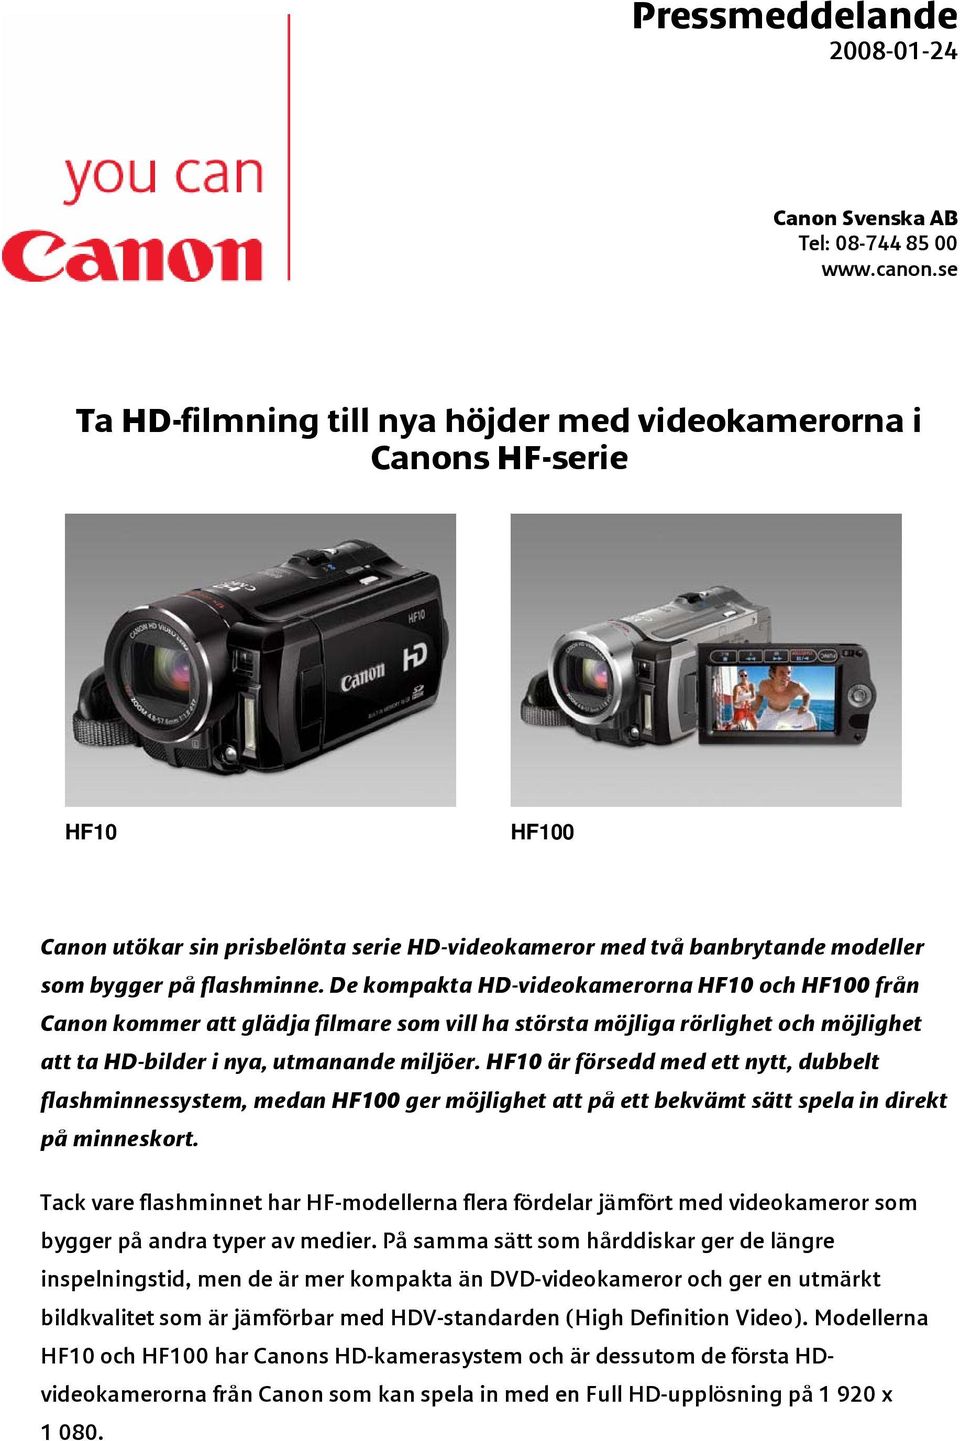 De kompakta HD-videokamerorna HF10 och HF100 från Canon kommer att glädja filmare som vill ha största möjliga rörlighet och möjlighet att ta HD-bilder i nya, utmanande miljöer.